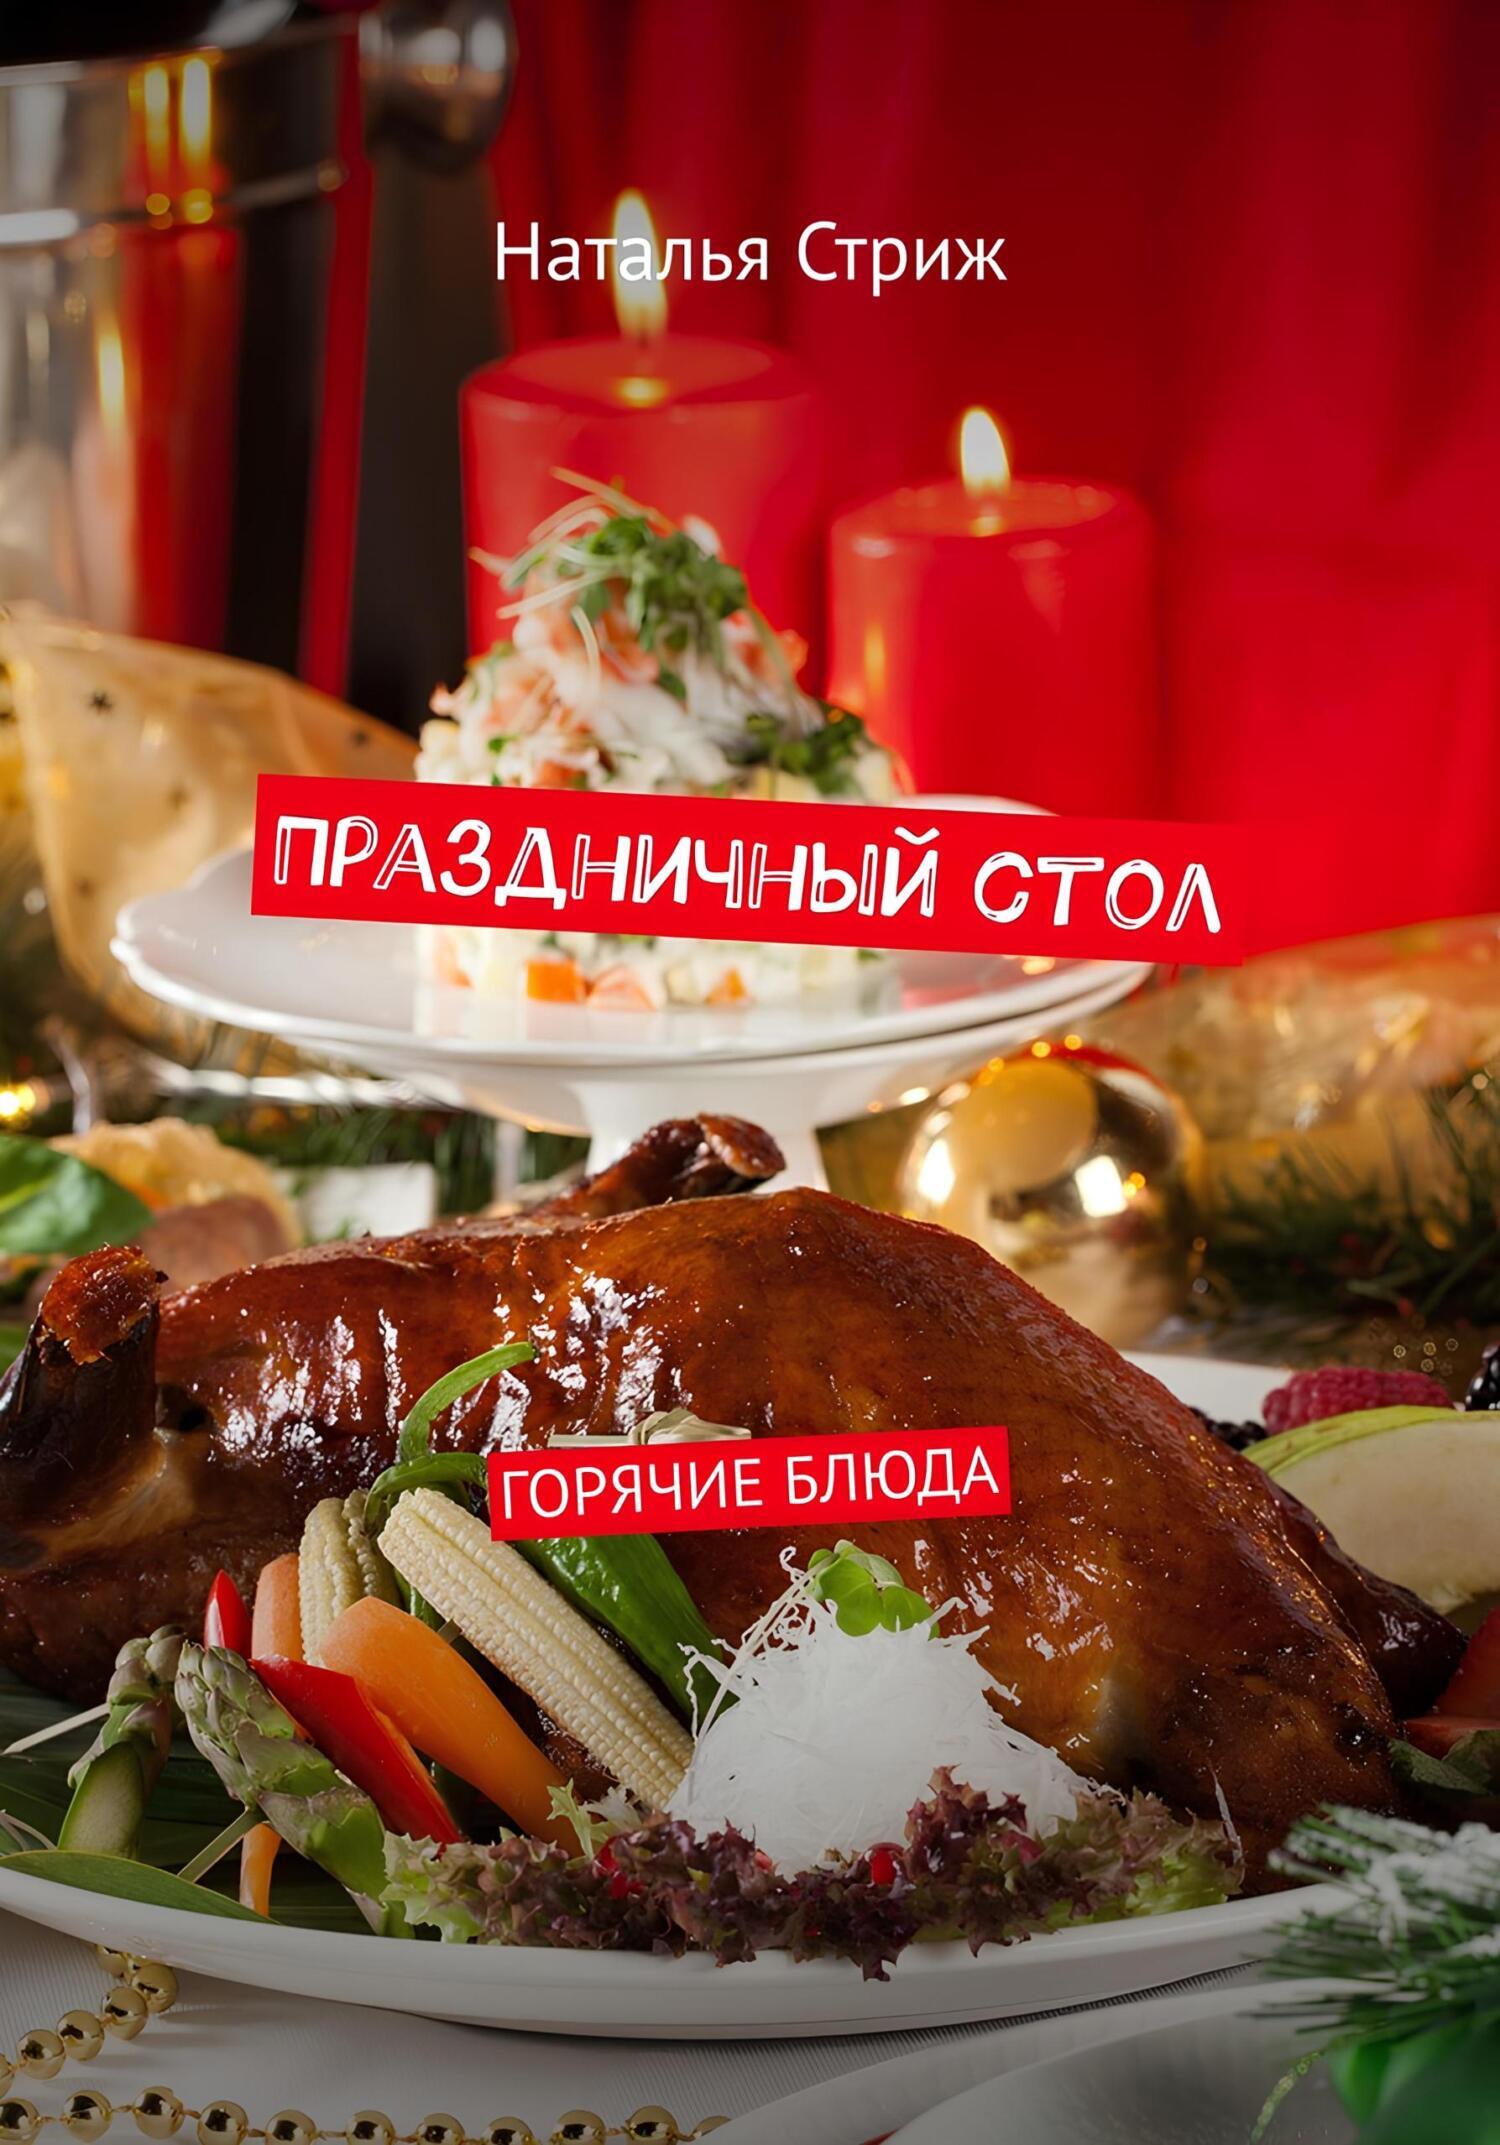 Горячие блюдп на праздничный стол - 10 рецептов с фото и описанием